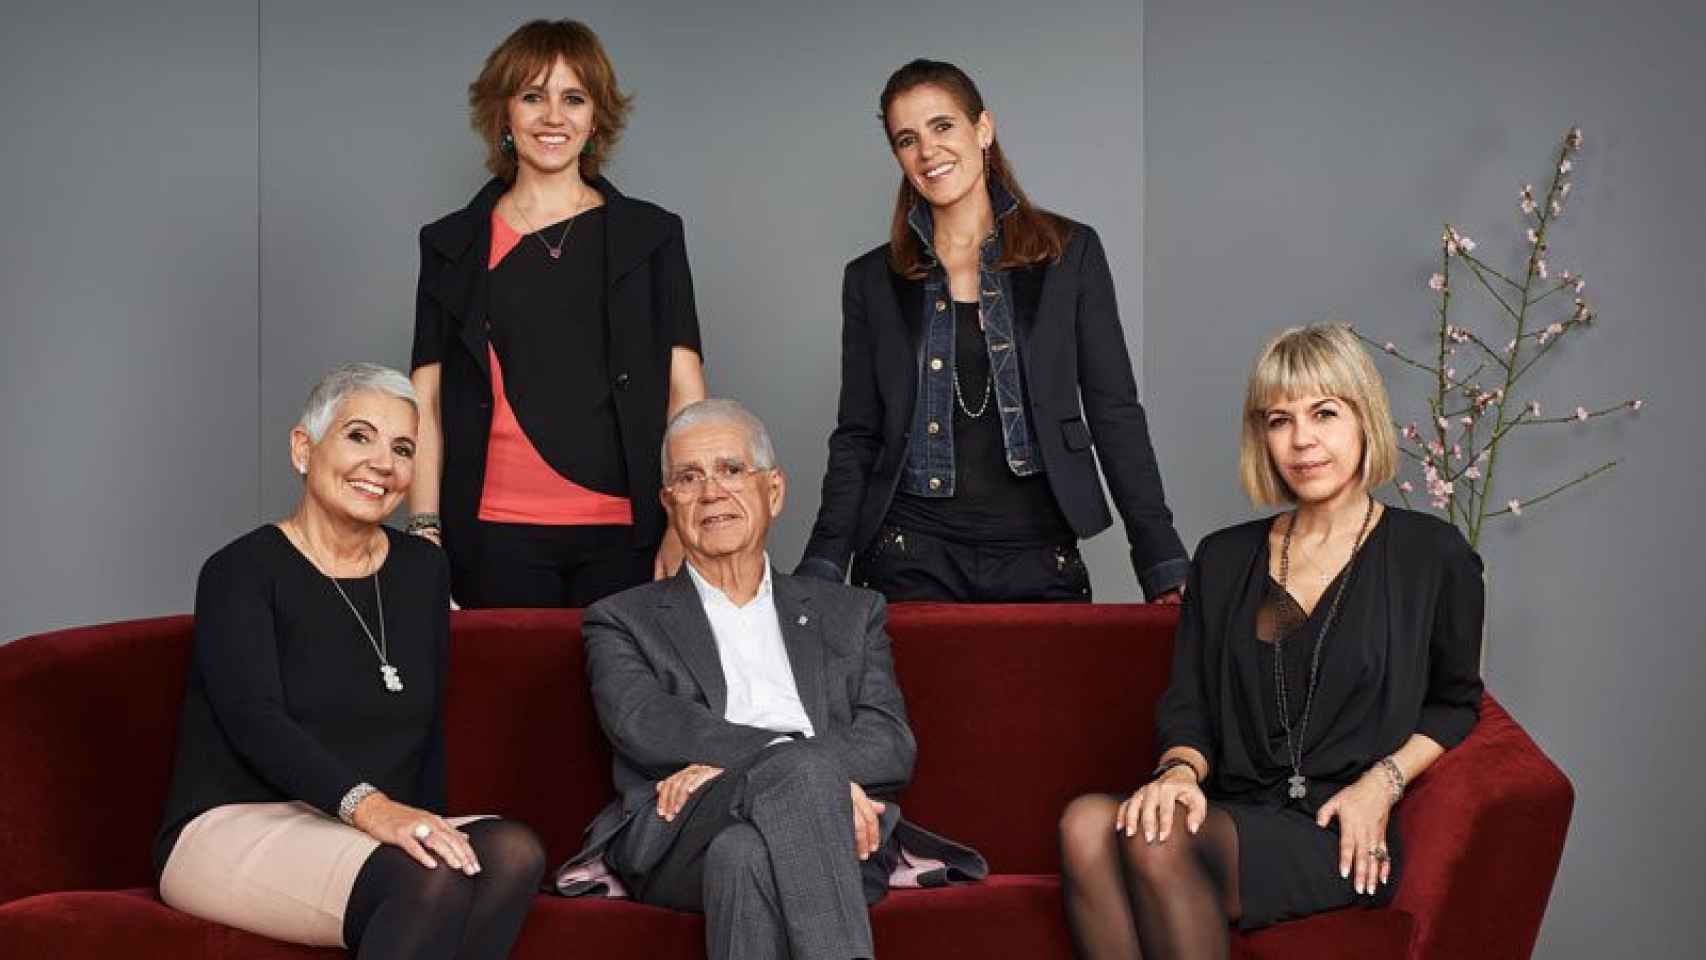 Rosa Oriol y su marido Salvador Tous (abajo izquierda) sentado junto a Alba Tous, la presidenta de la joyería. De pie, Rosa Tous, vicepresidenta corporativa, y Marta Tous, directora de diseño.